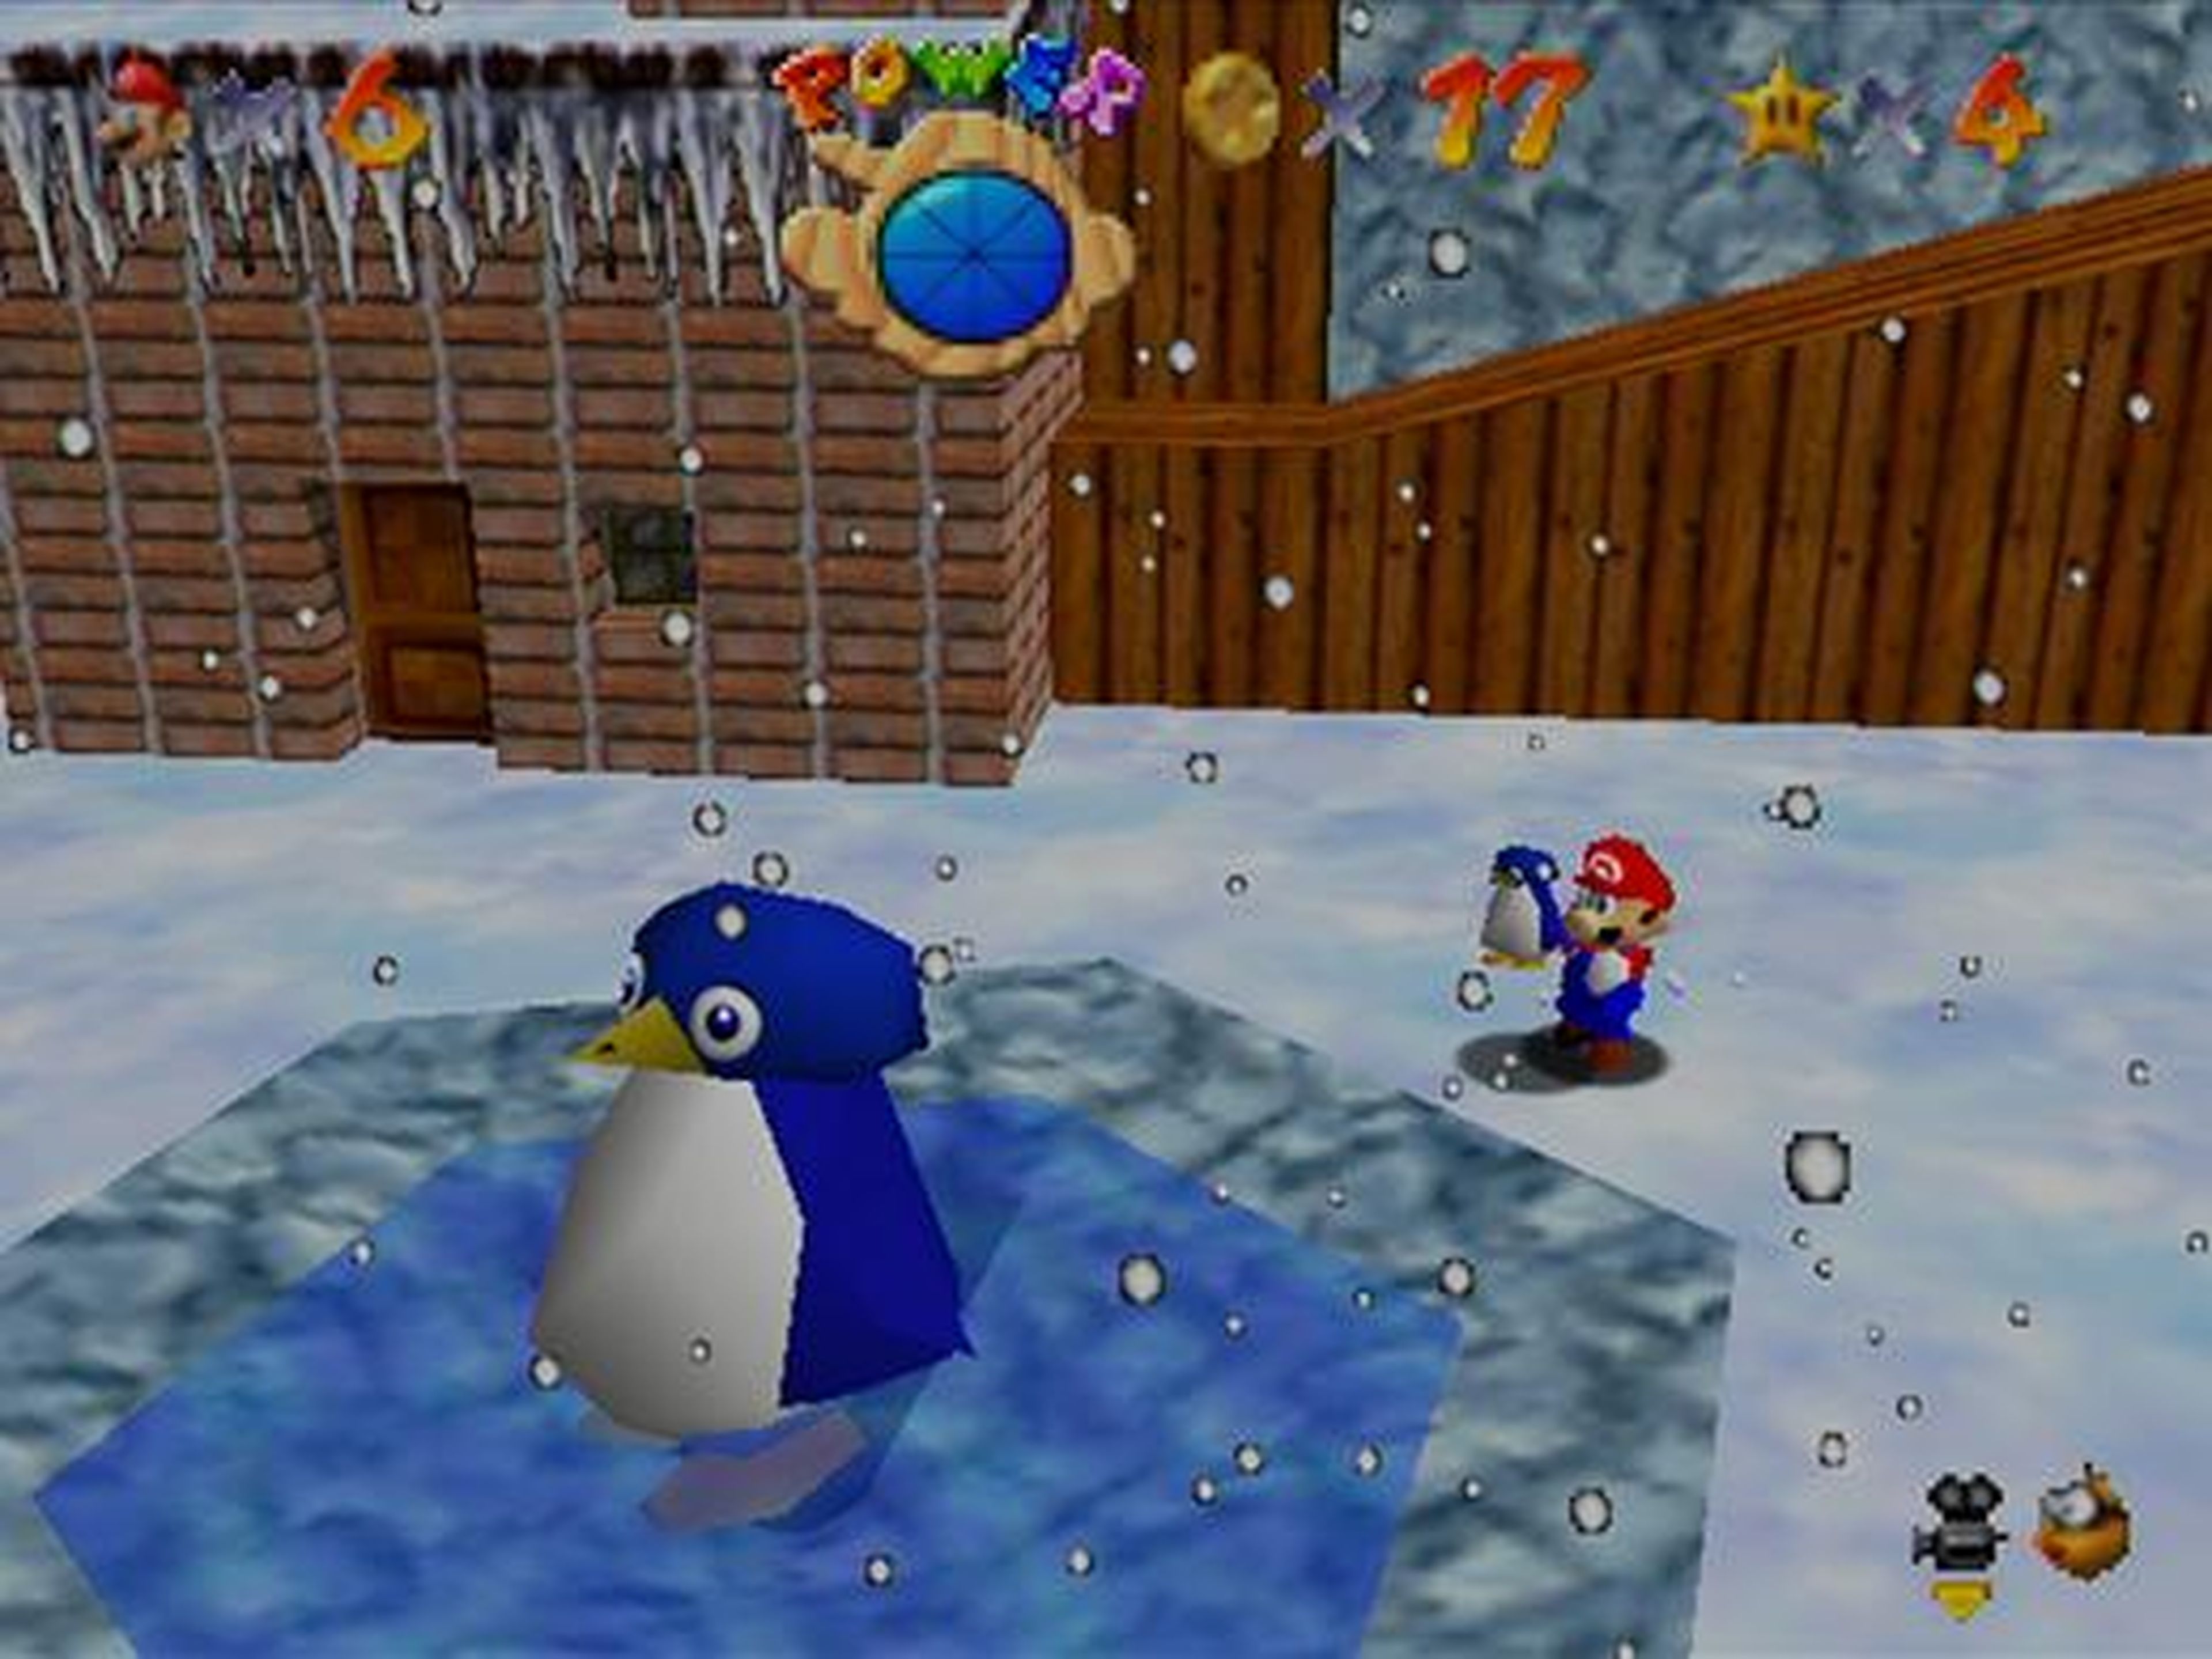 1996 — "Super Mario 64" (Nintendo 64)